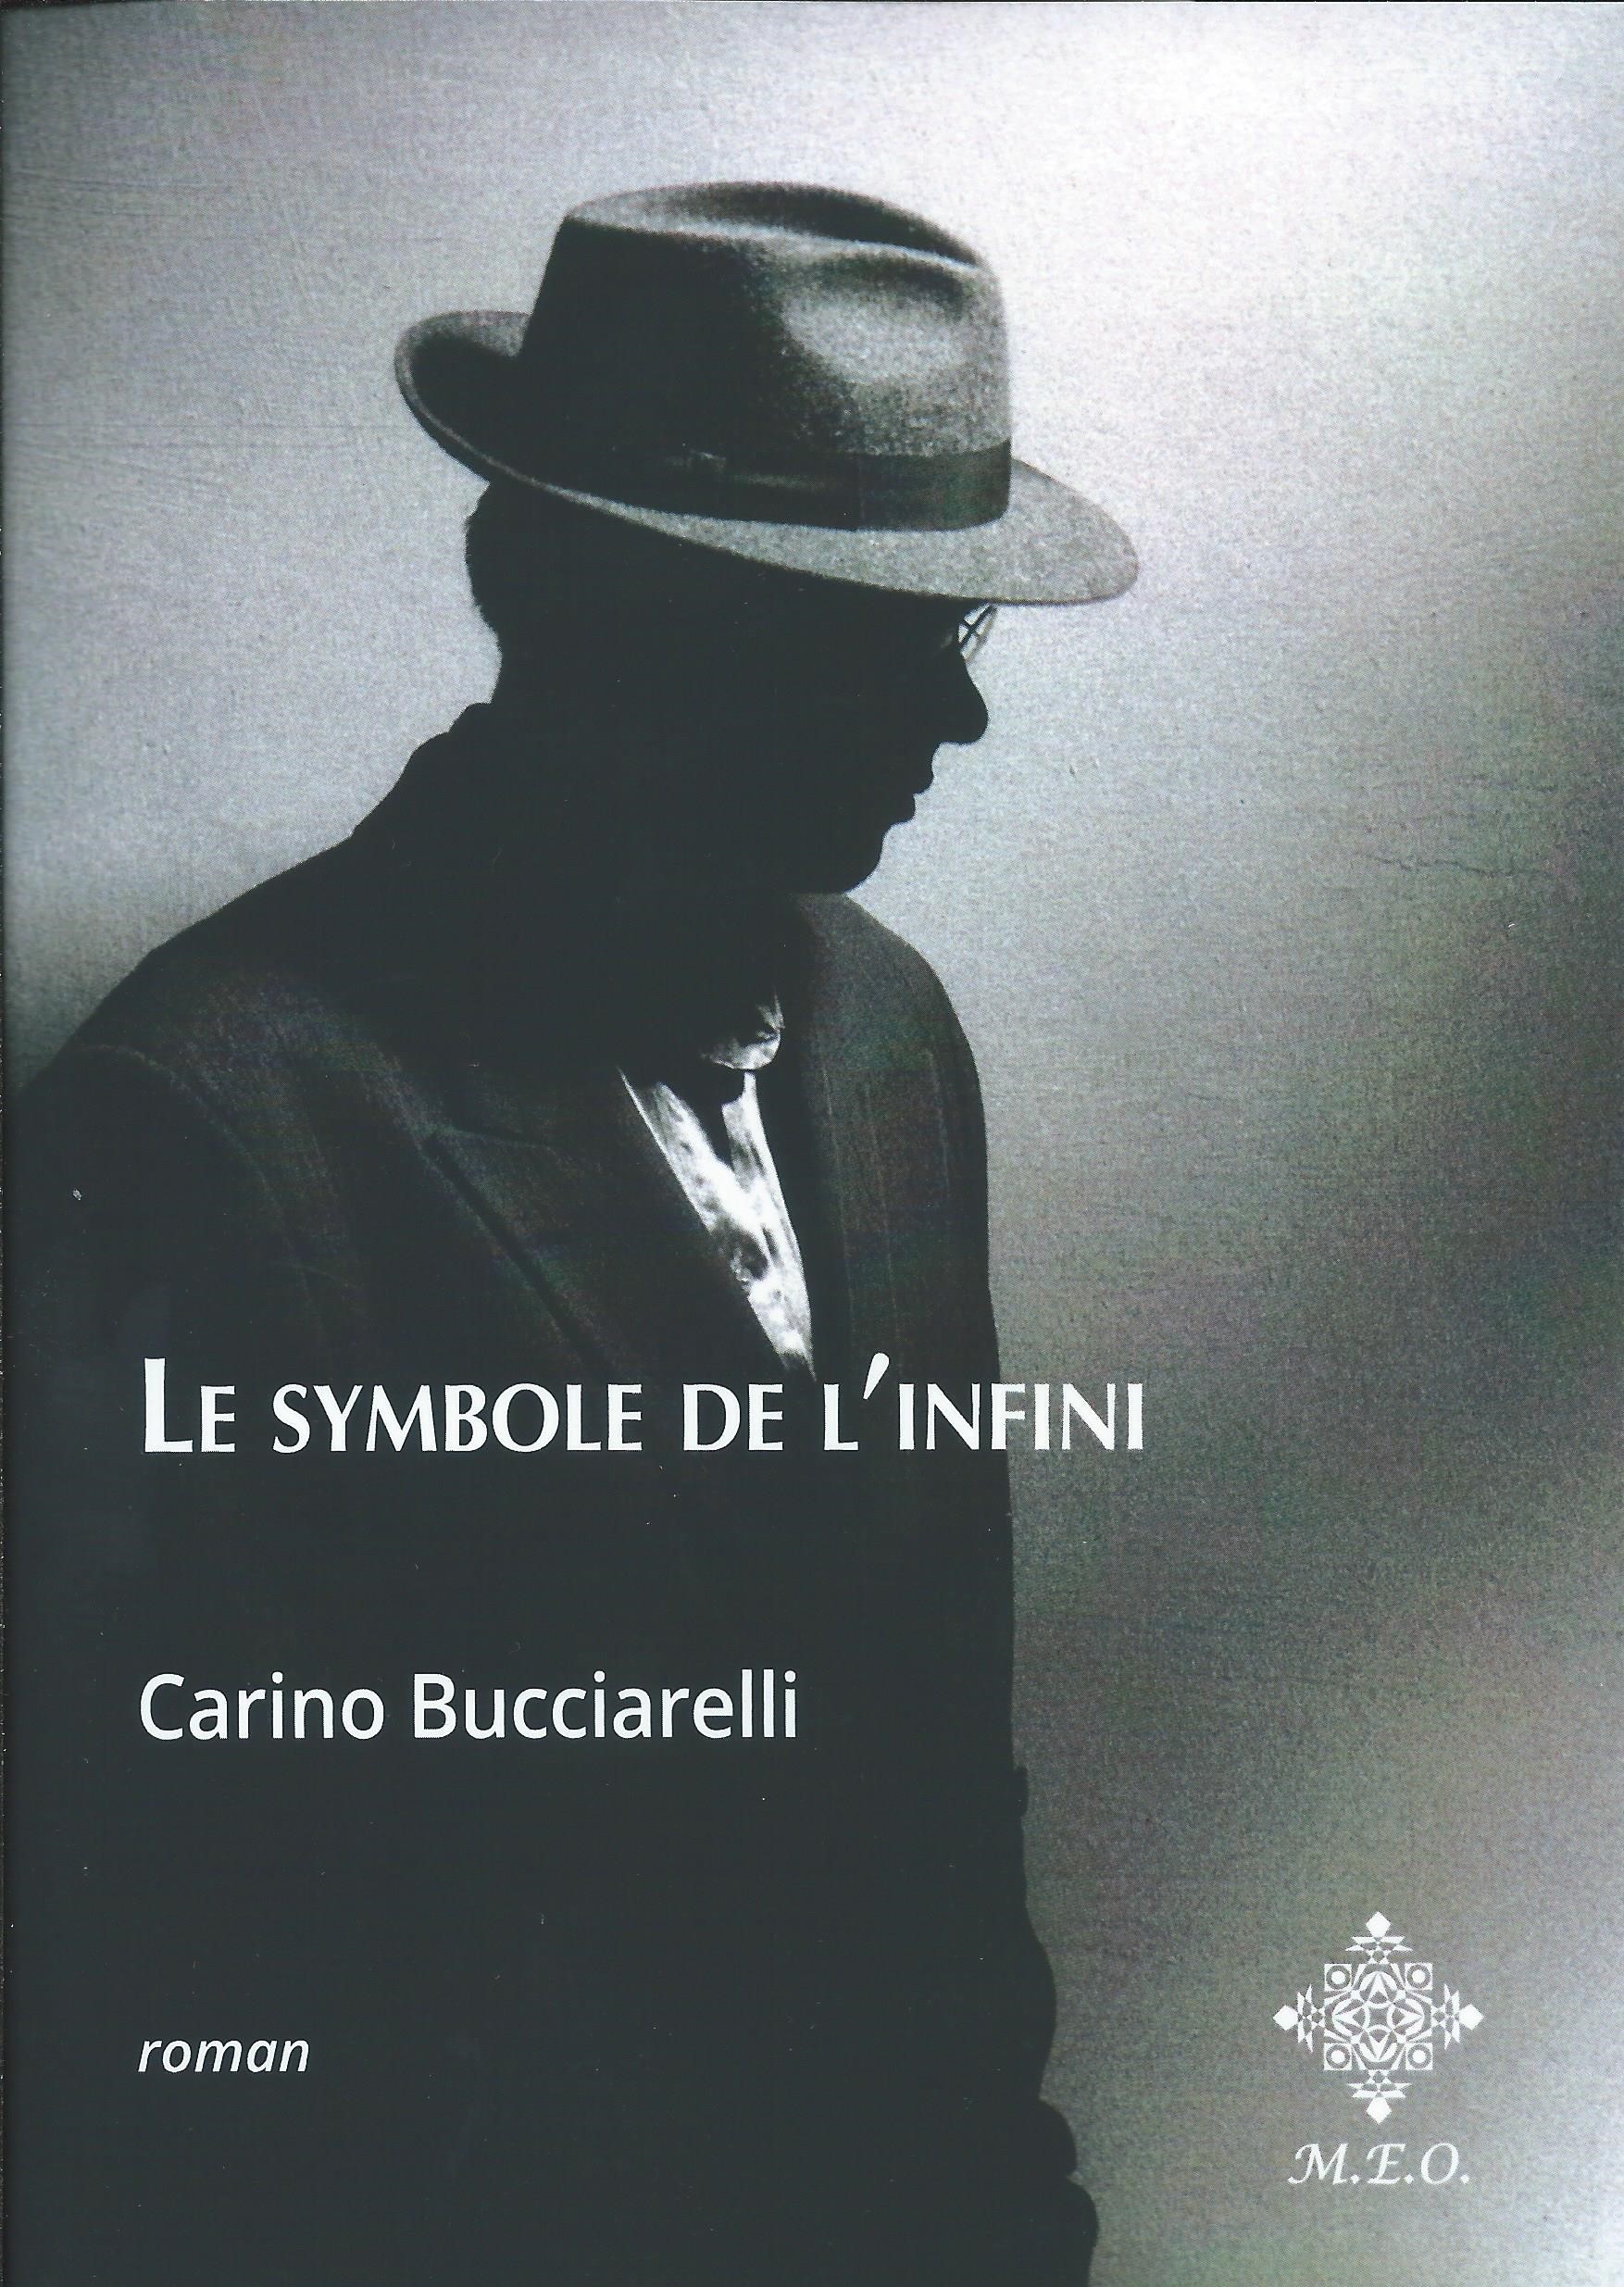 CARINO BUCCIARELLI - Le symbole de l'infini